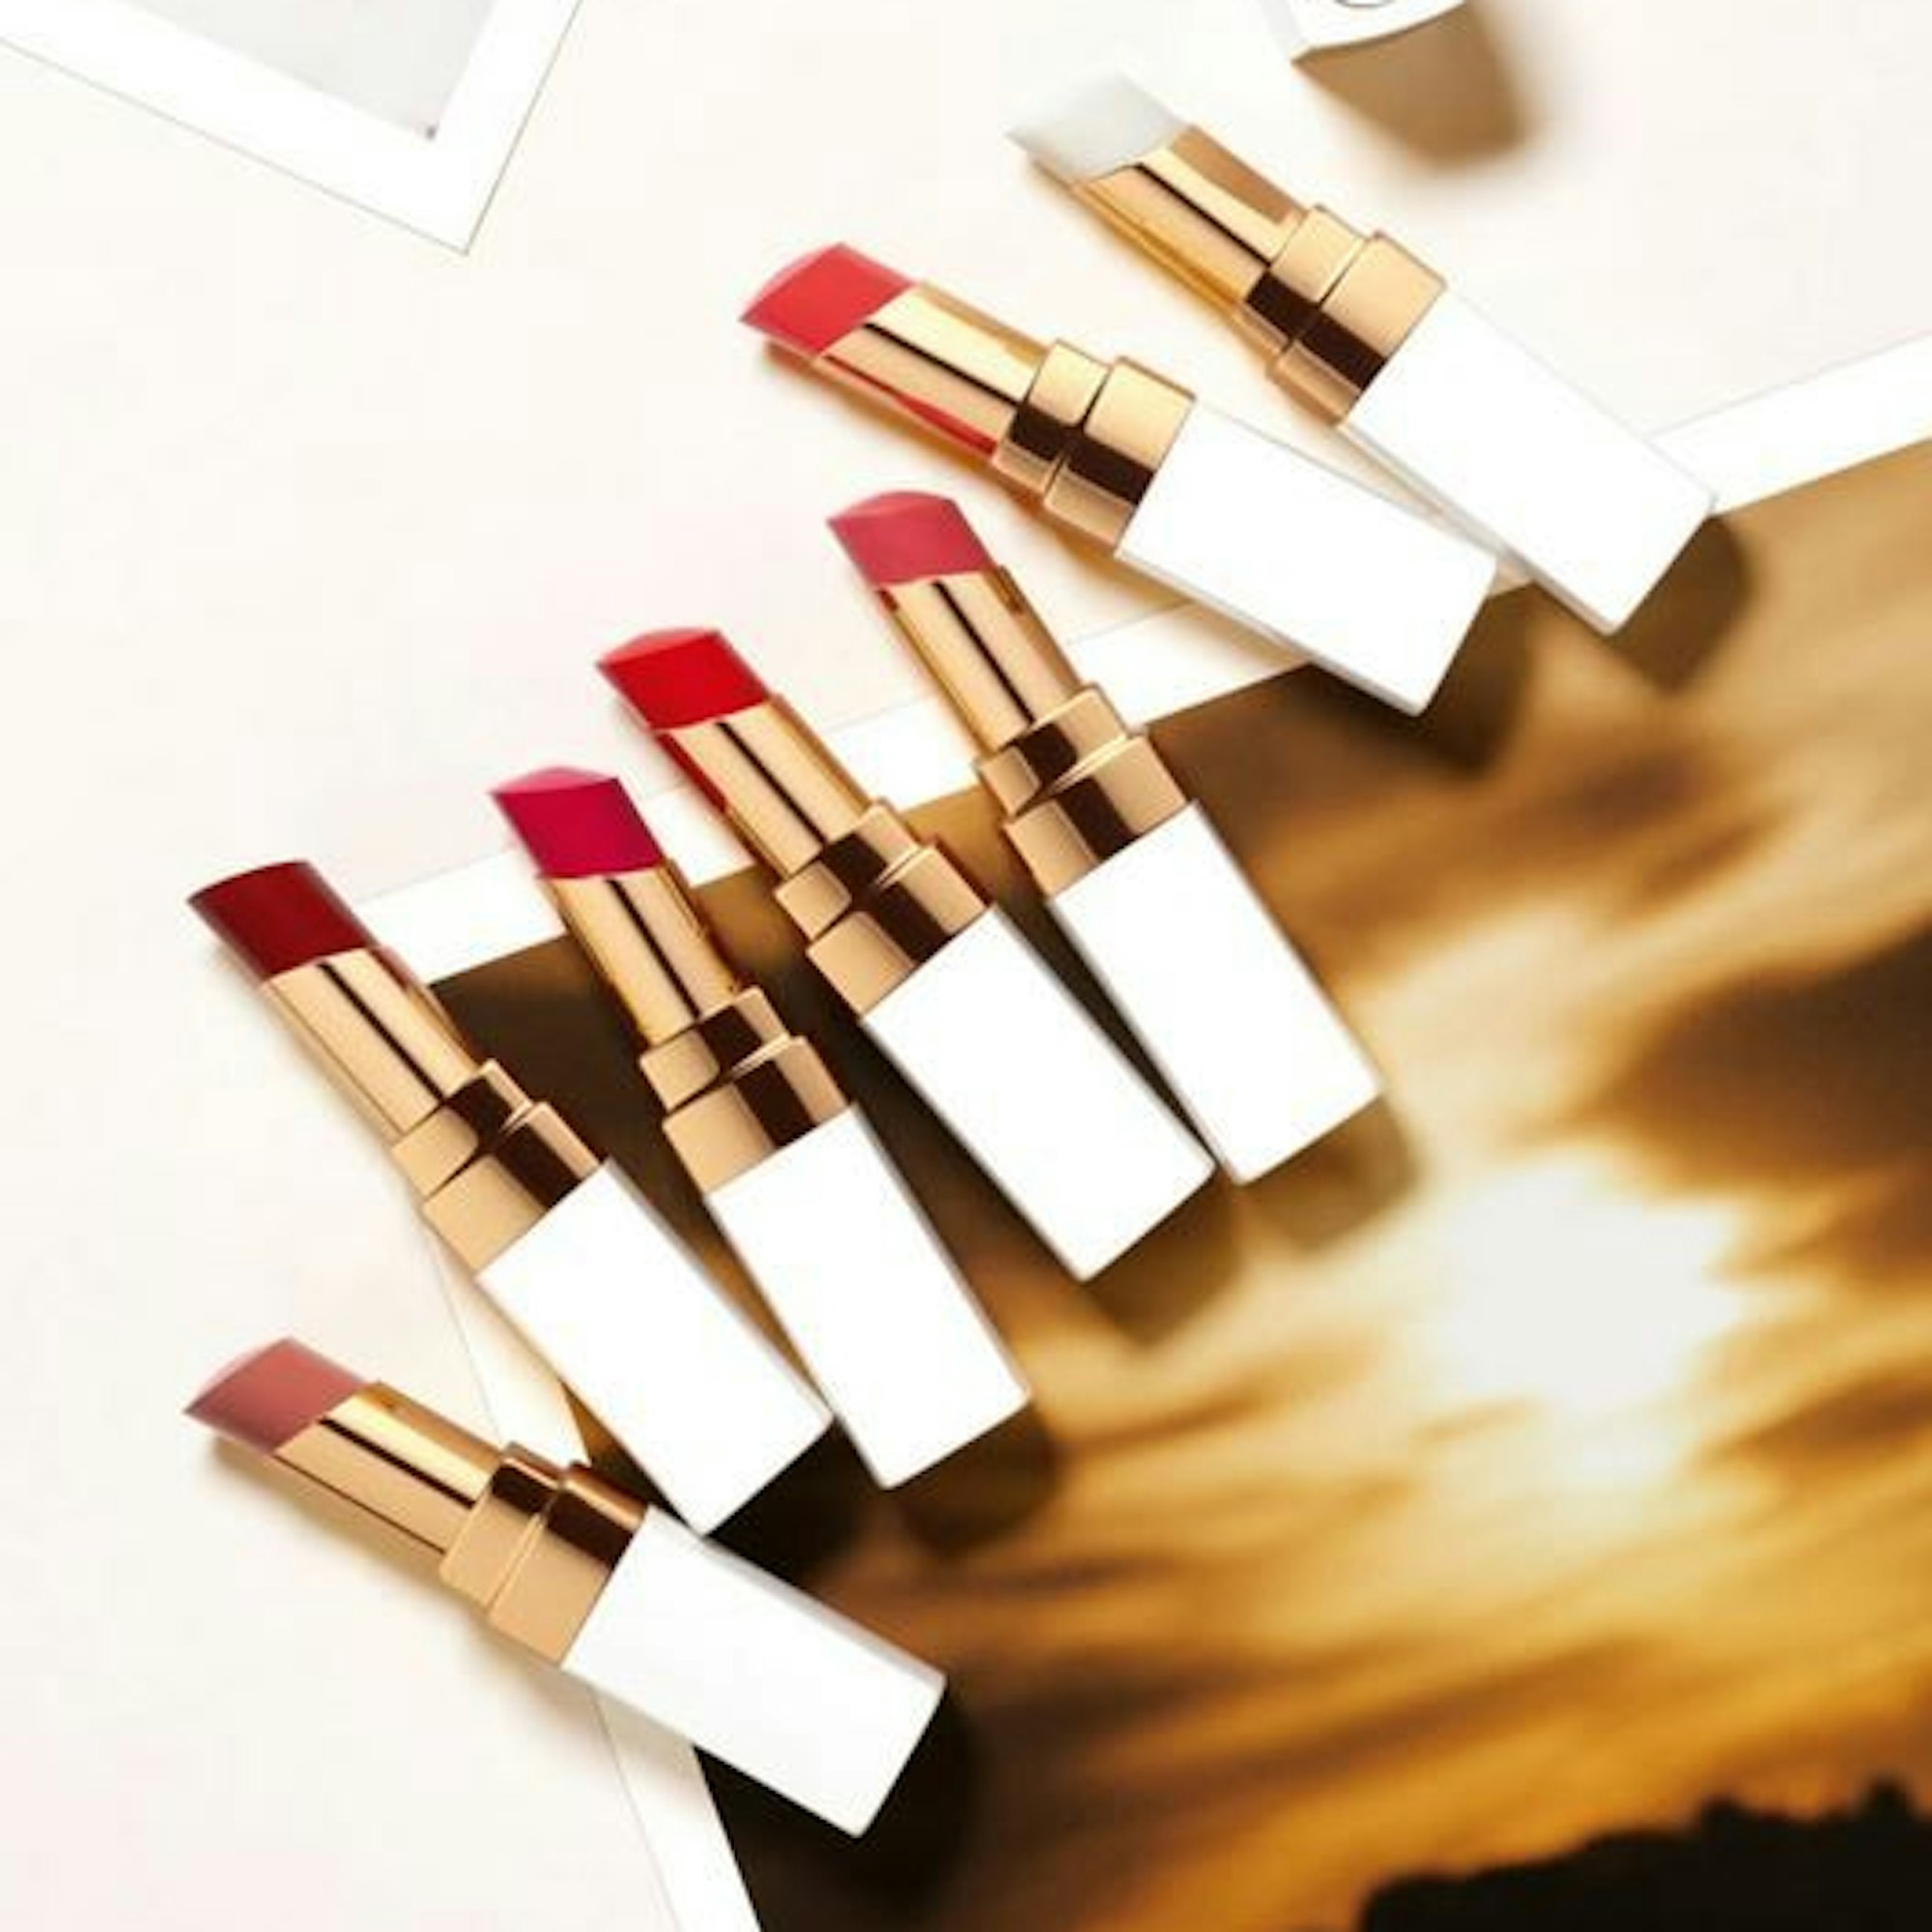 Sieben Lippenstifte von Chanel liegen auf einem neutralen Hintergrund.